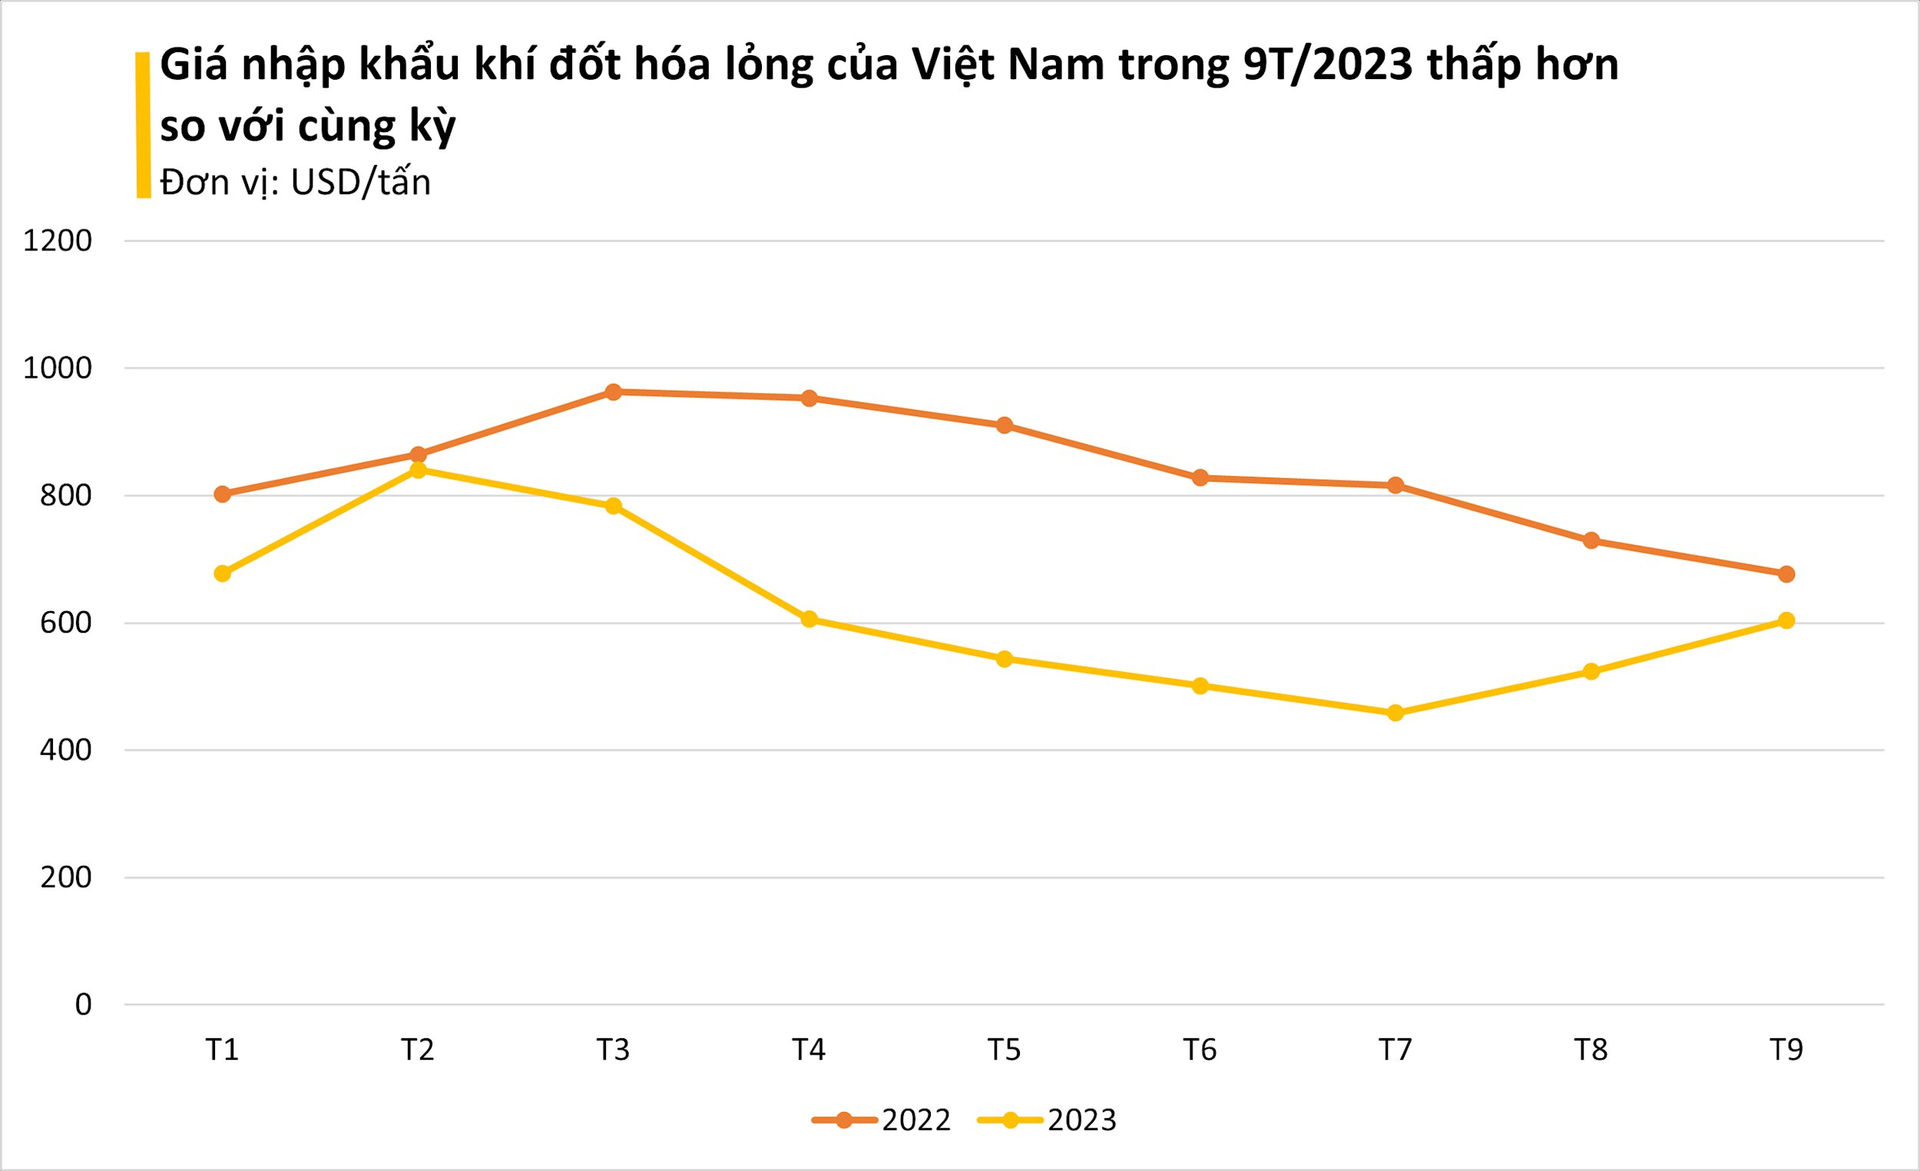 Giá cực rẻ, một mặt hàng từ Trung Đông đang ồ ạt tràn vào Việt Nam: nhập khẩu tăng gần 800%, Việt Nam được xem là 'át chủ bài' trên thị trường - Ảnh 1.